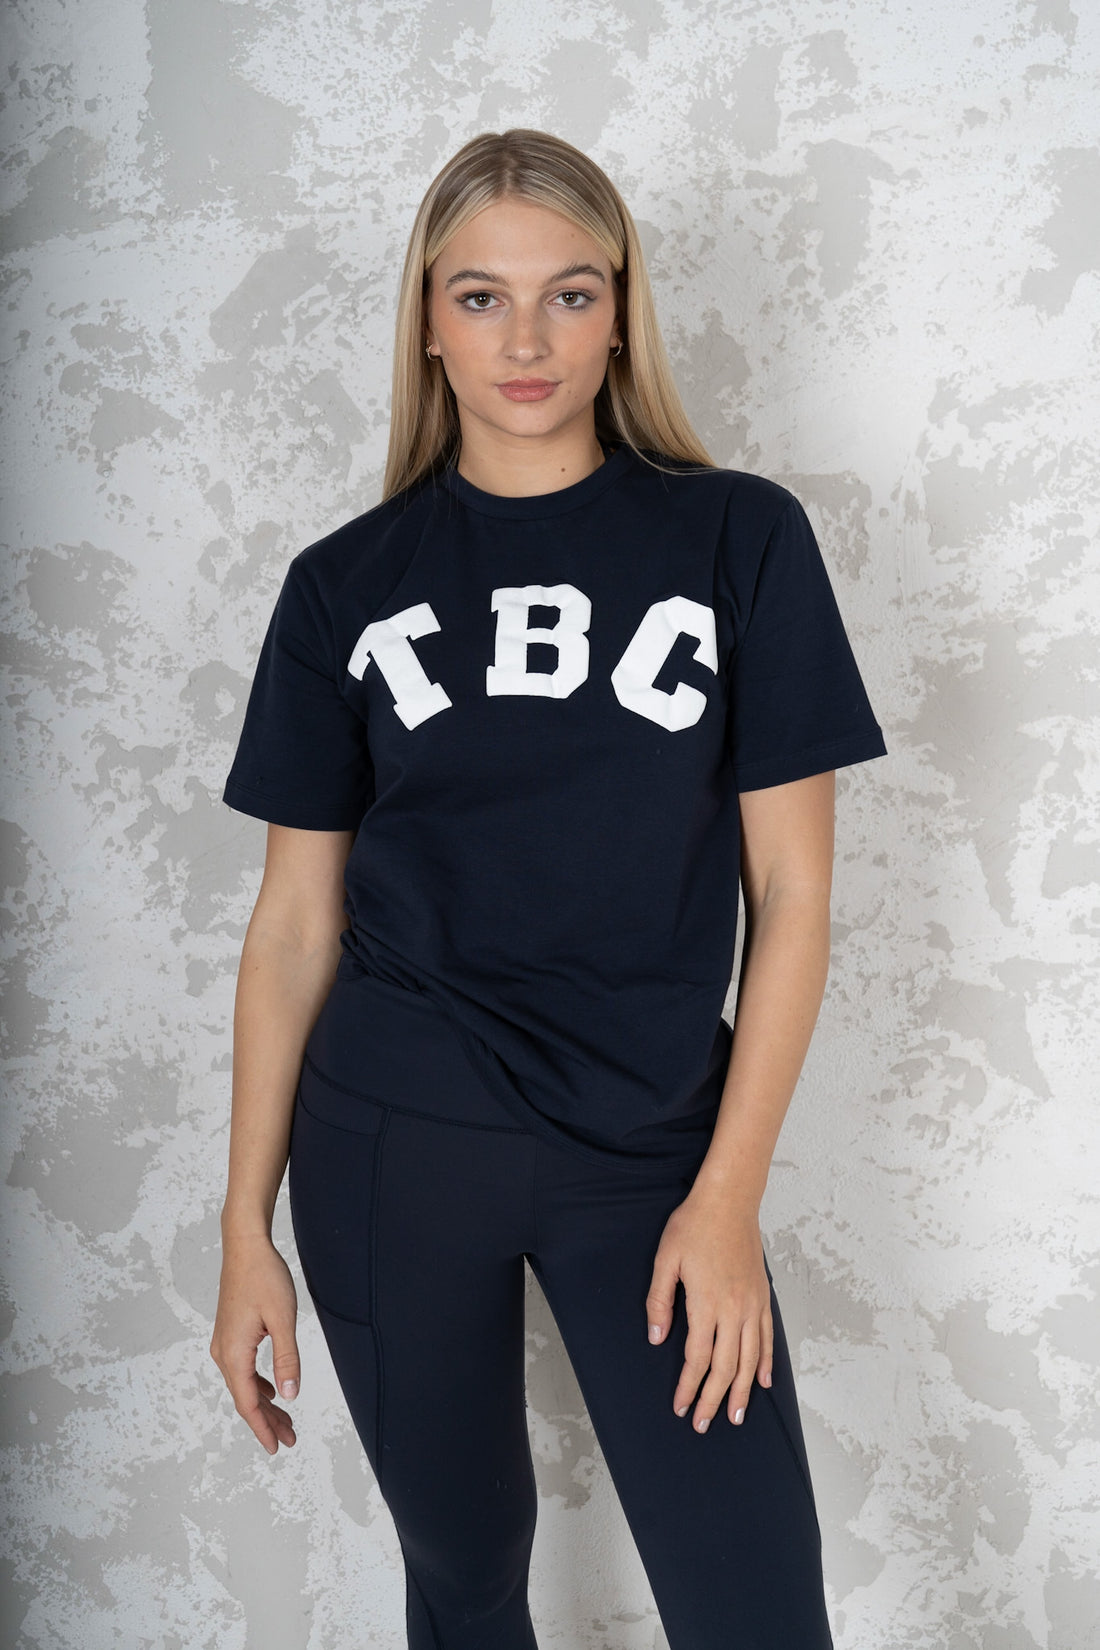 TBC t-shirt navy